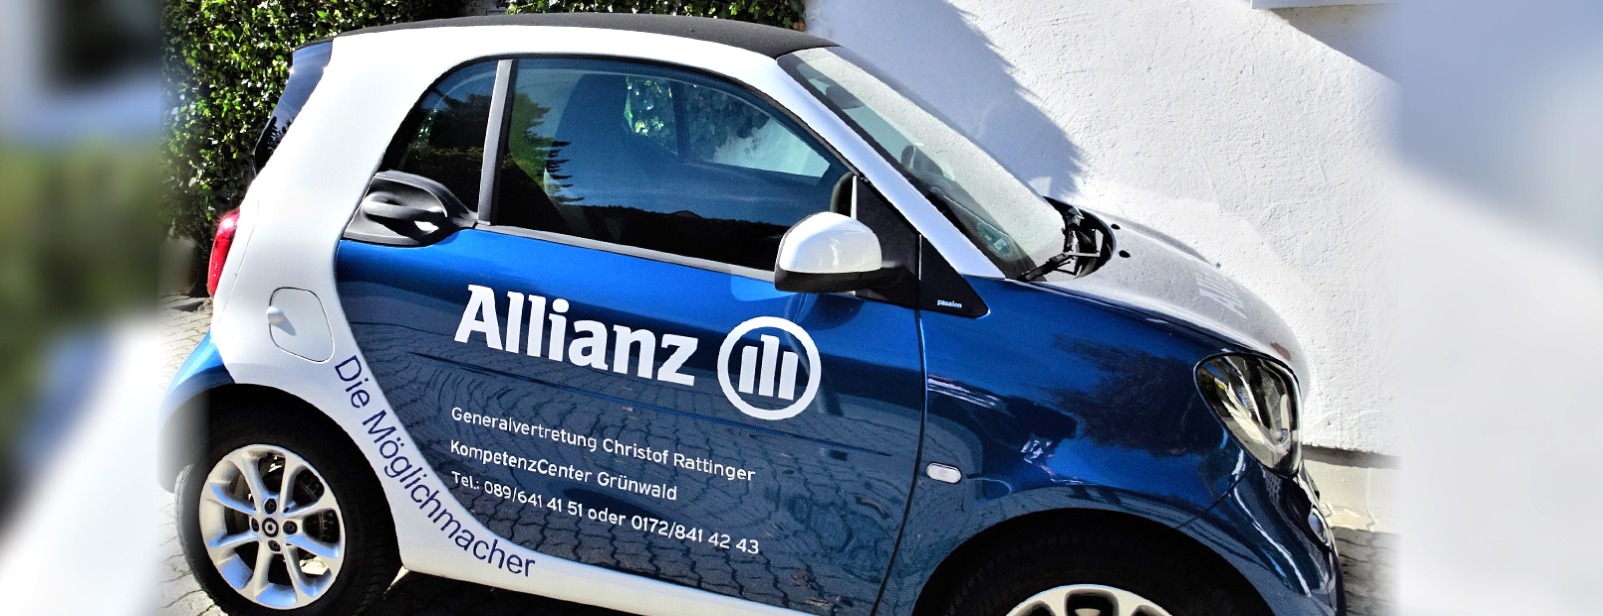 Allianz Versicherung Christof Rattinger Grünwald - Der Agentur Rattinger Smart